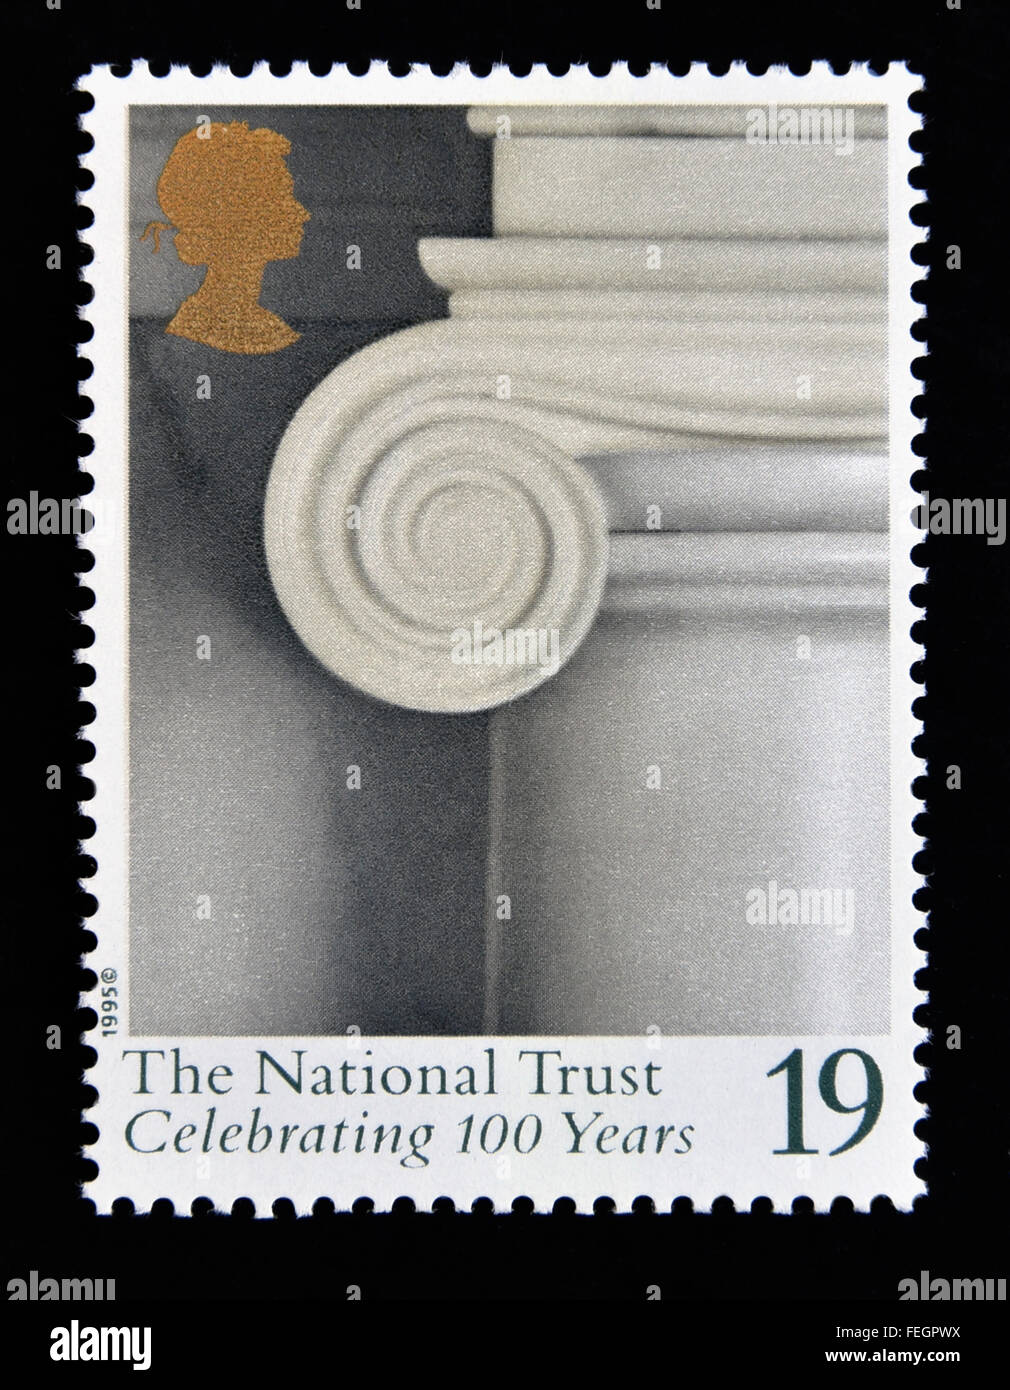 Briefmarke. Great Britain. Königin Elizabeth II. 1995. Hundertjahrfeier des National Trust. 1895-1995. 19p. Stockfoto